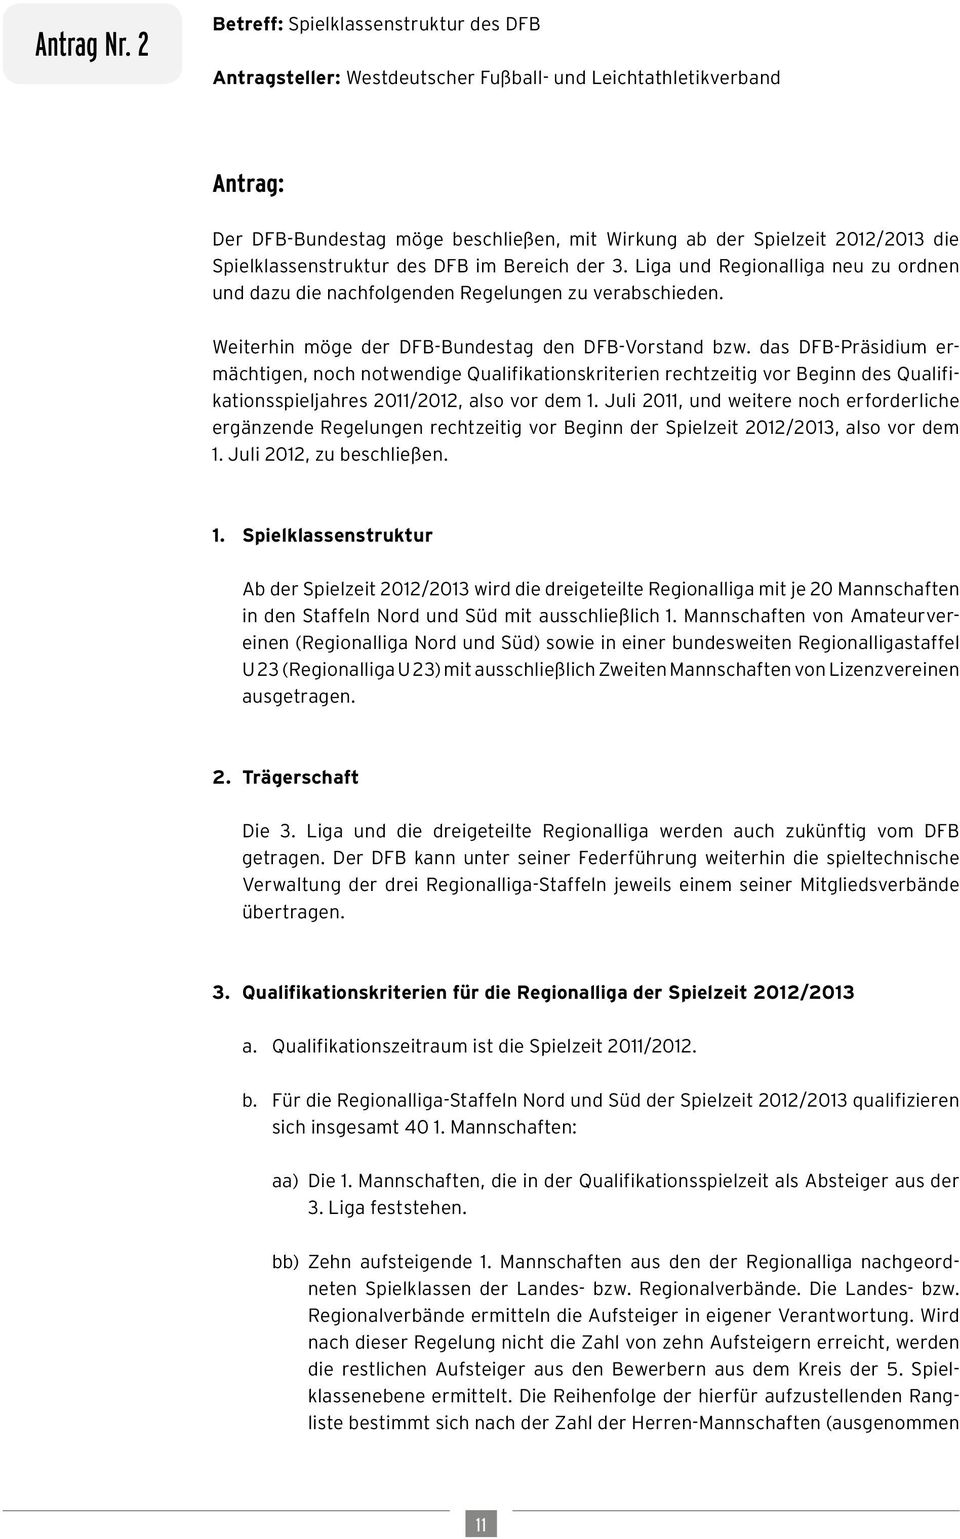 Spielklassenstruktur des DFB im Bereich der 3. Liga und Regionalliga neu zu ordnen und dazu die nachfolgenden Regelungen zu verabschieden. Weiterhin möge der DFB-Bundestag den DFB-Vorstand bzw.